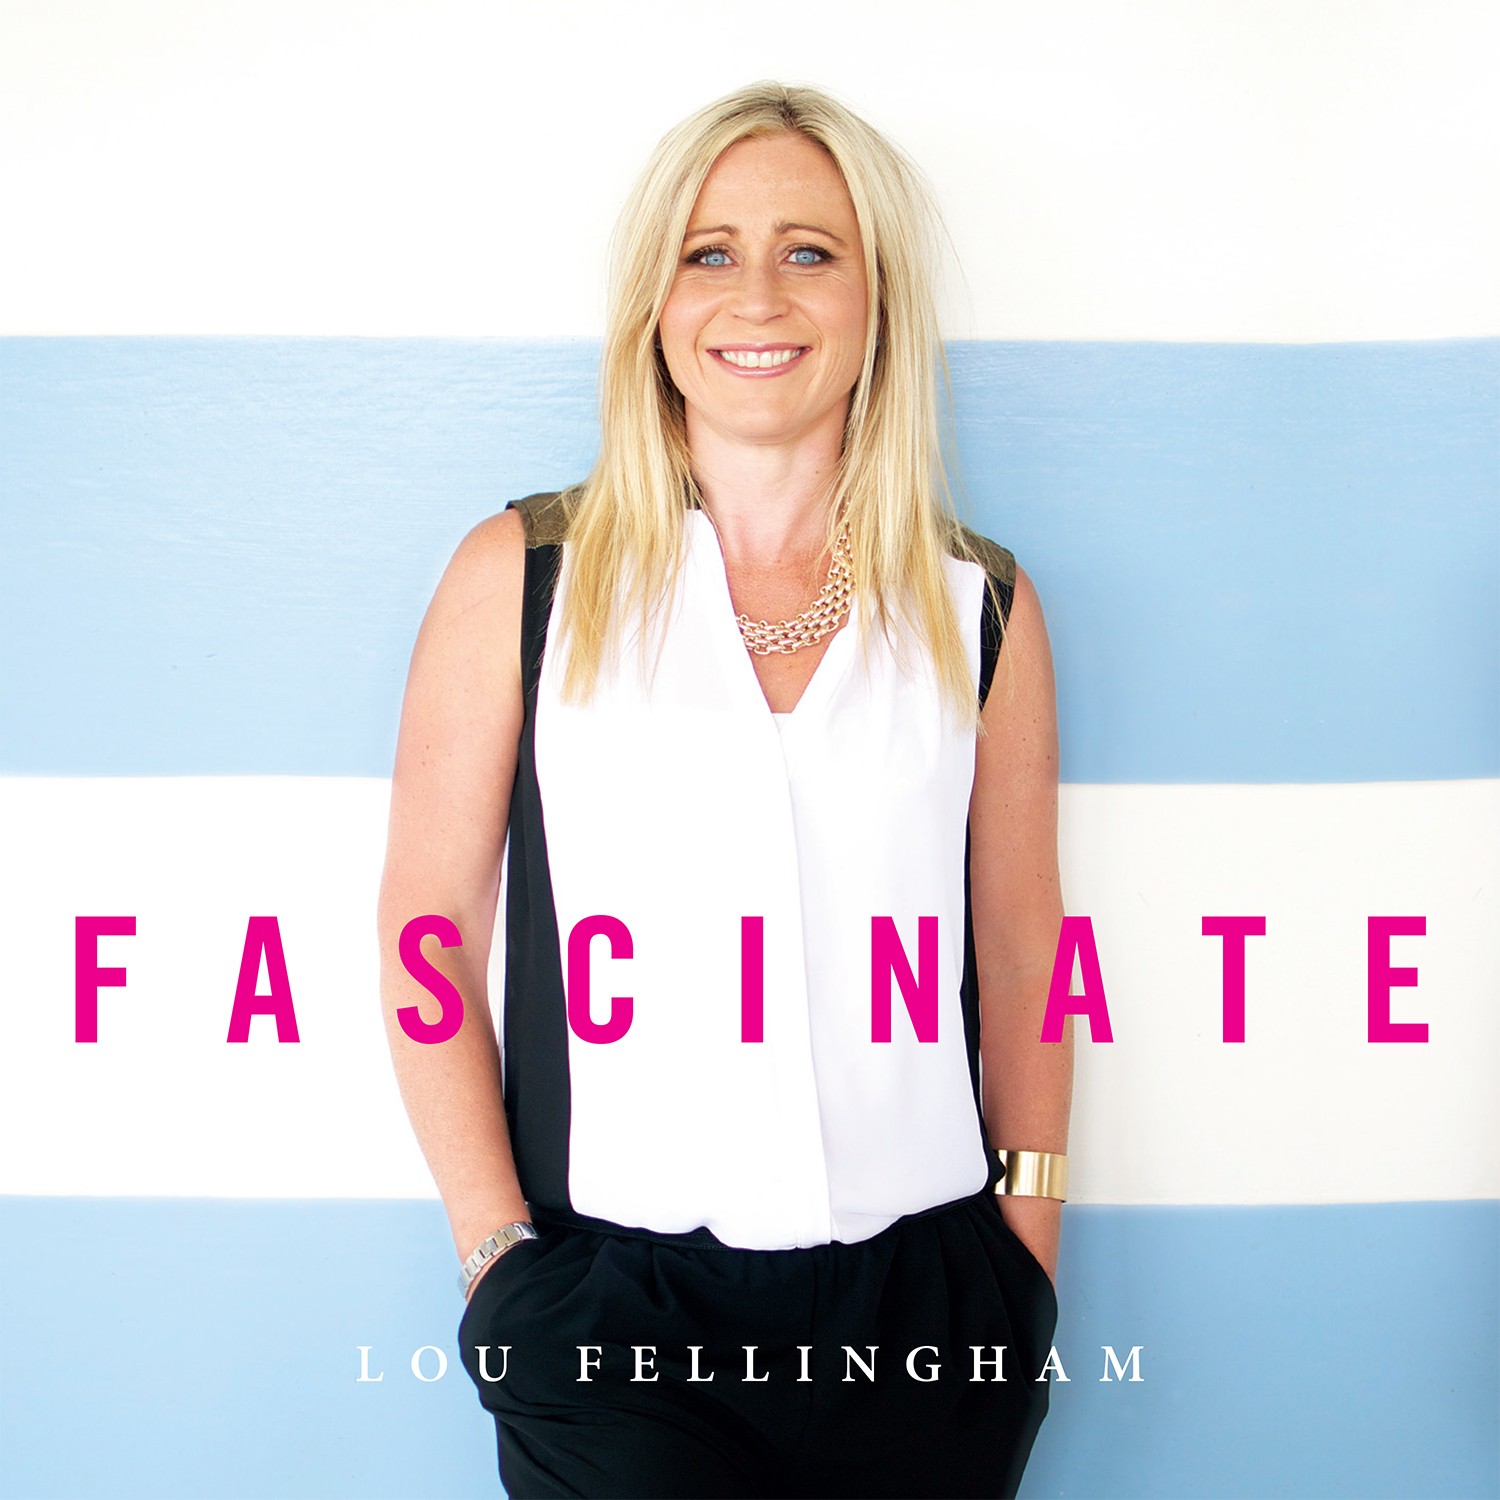 Lou Fellingham - Fascinate